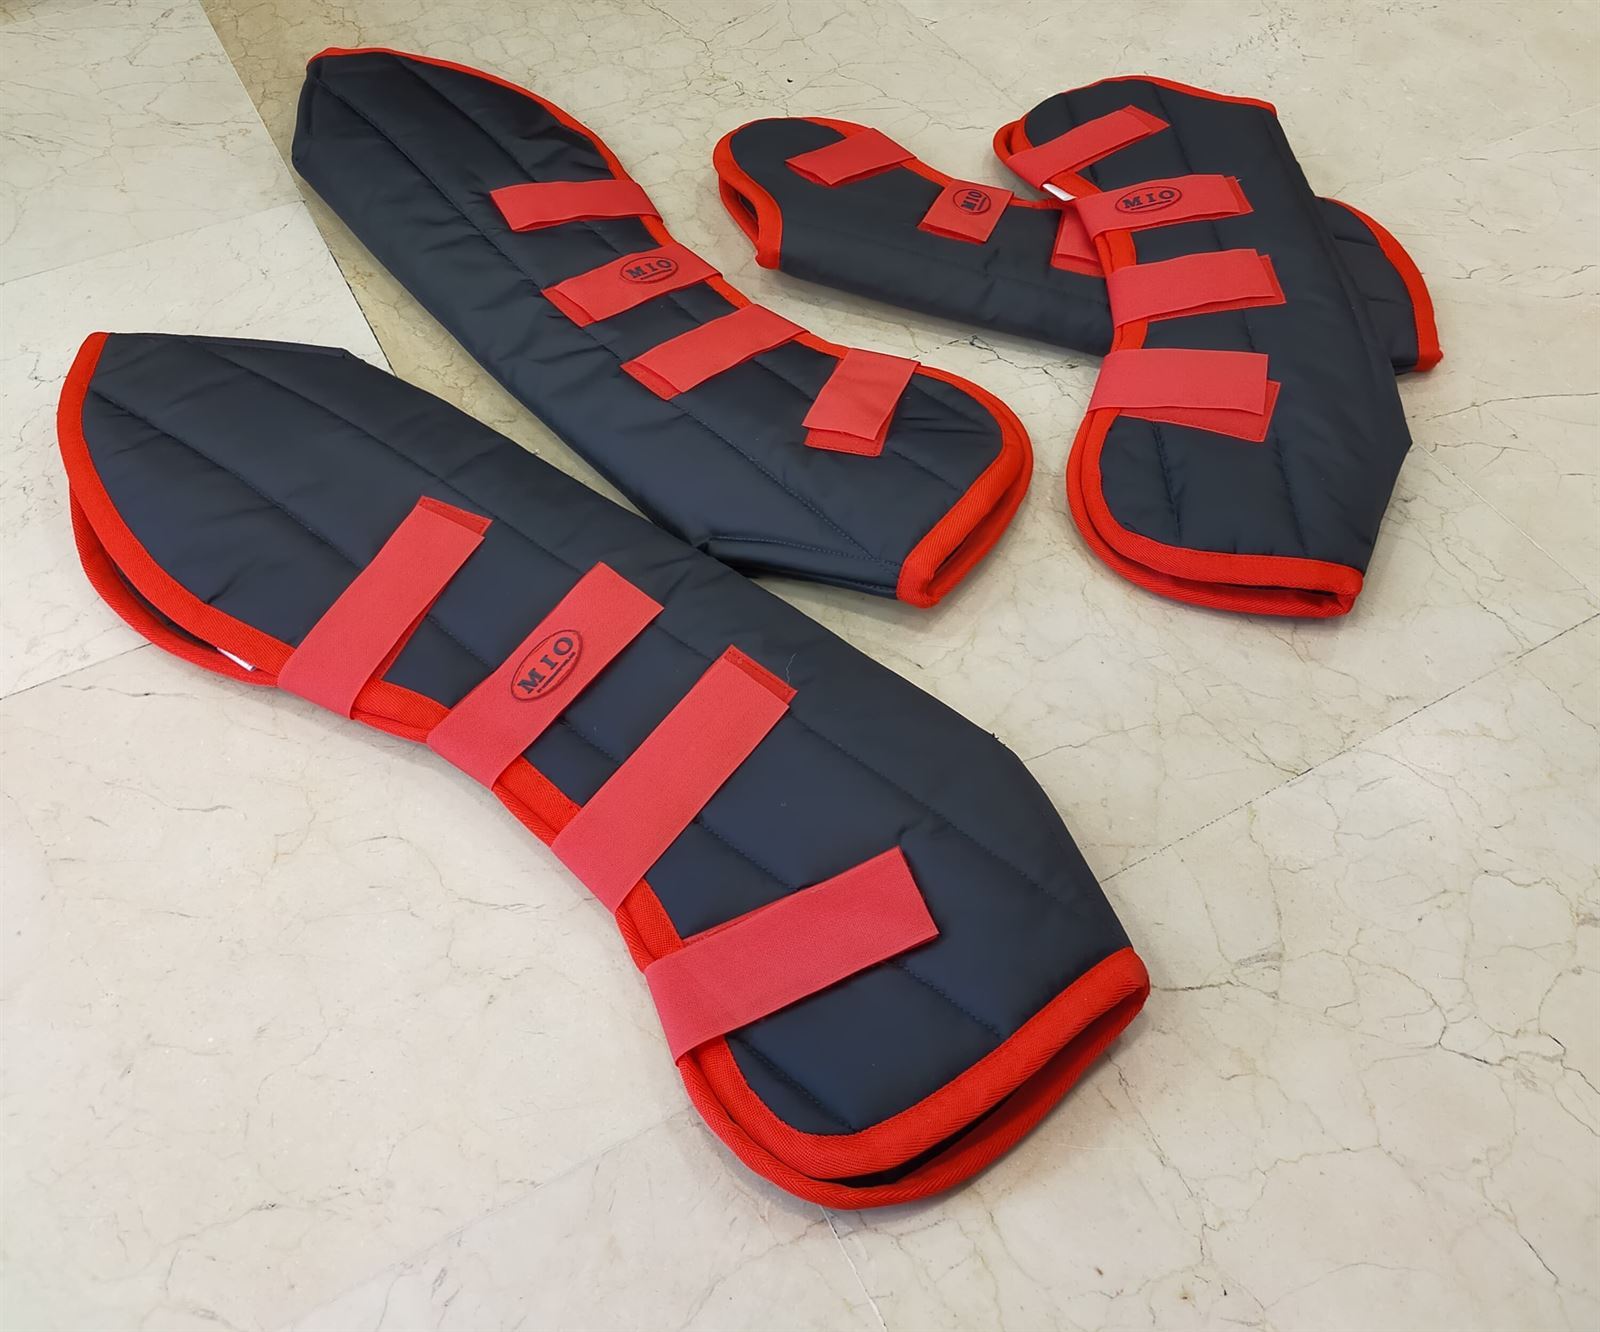 Protectores transporte MIO, color marino/rojo, talla FULL - Imagen 3